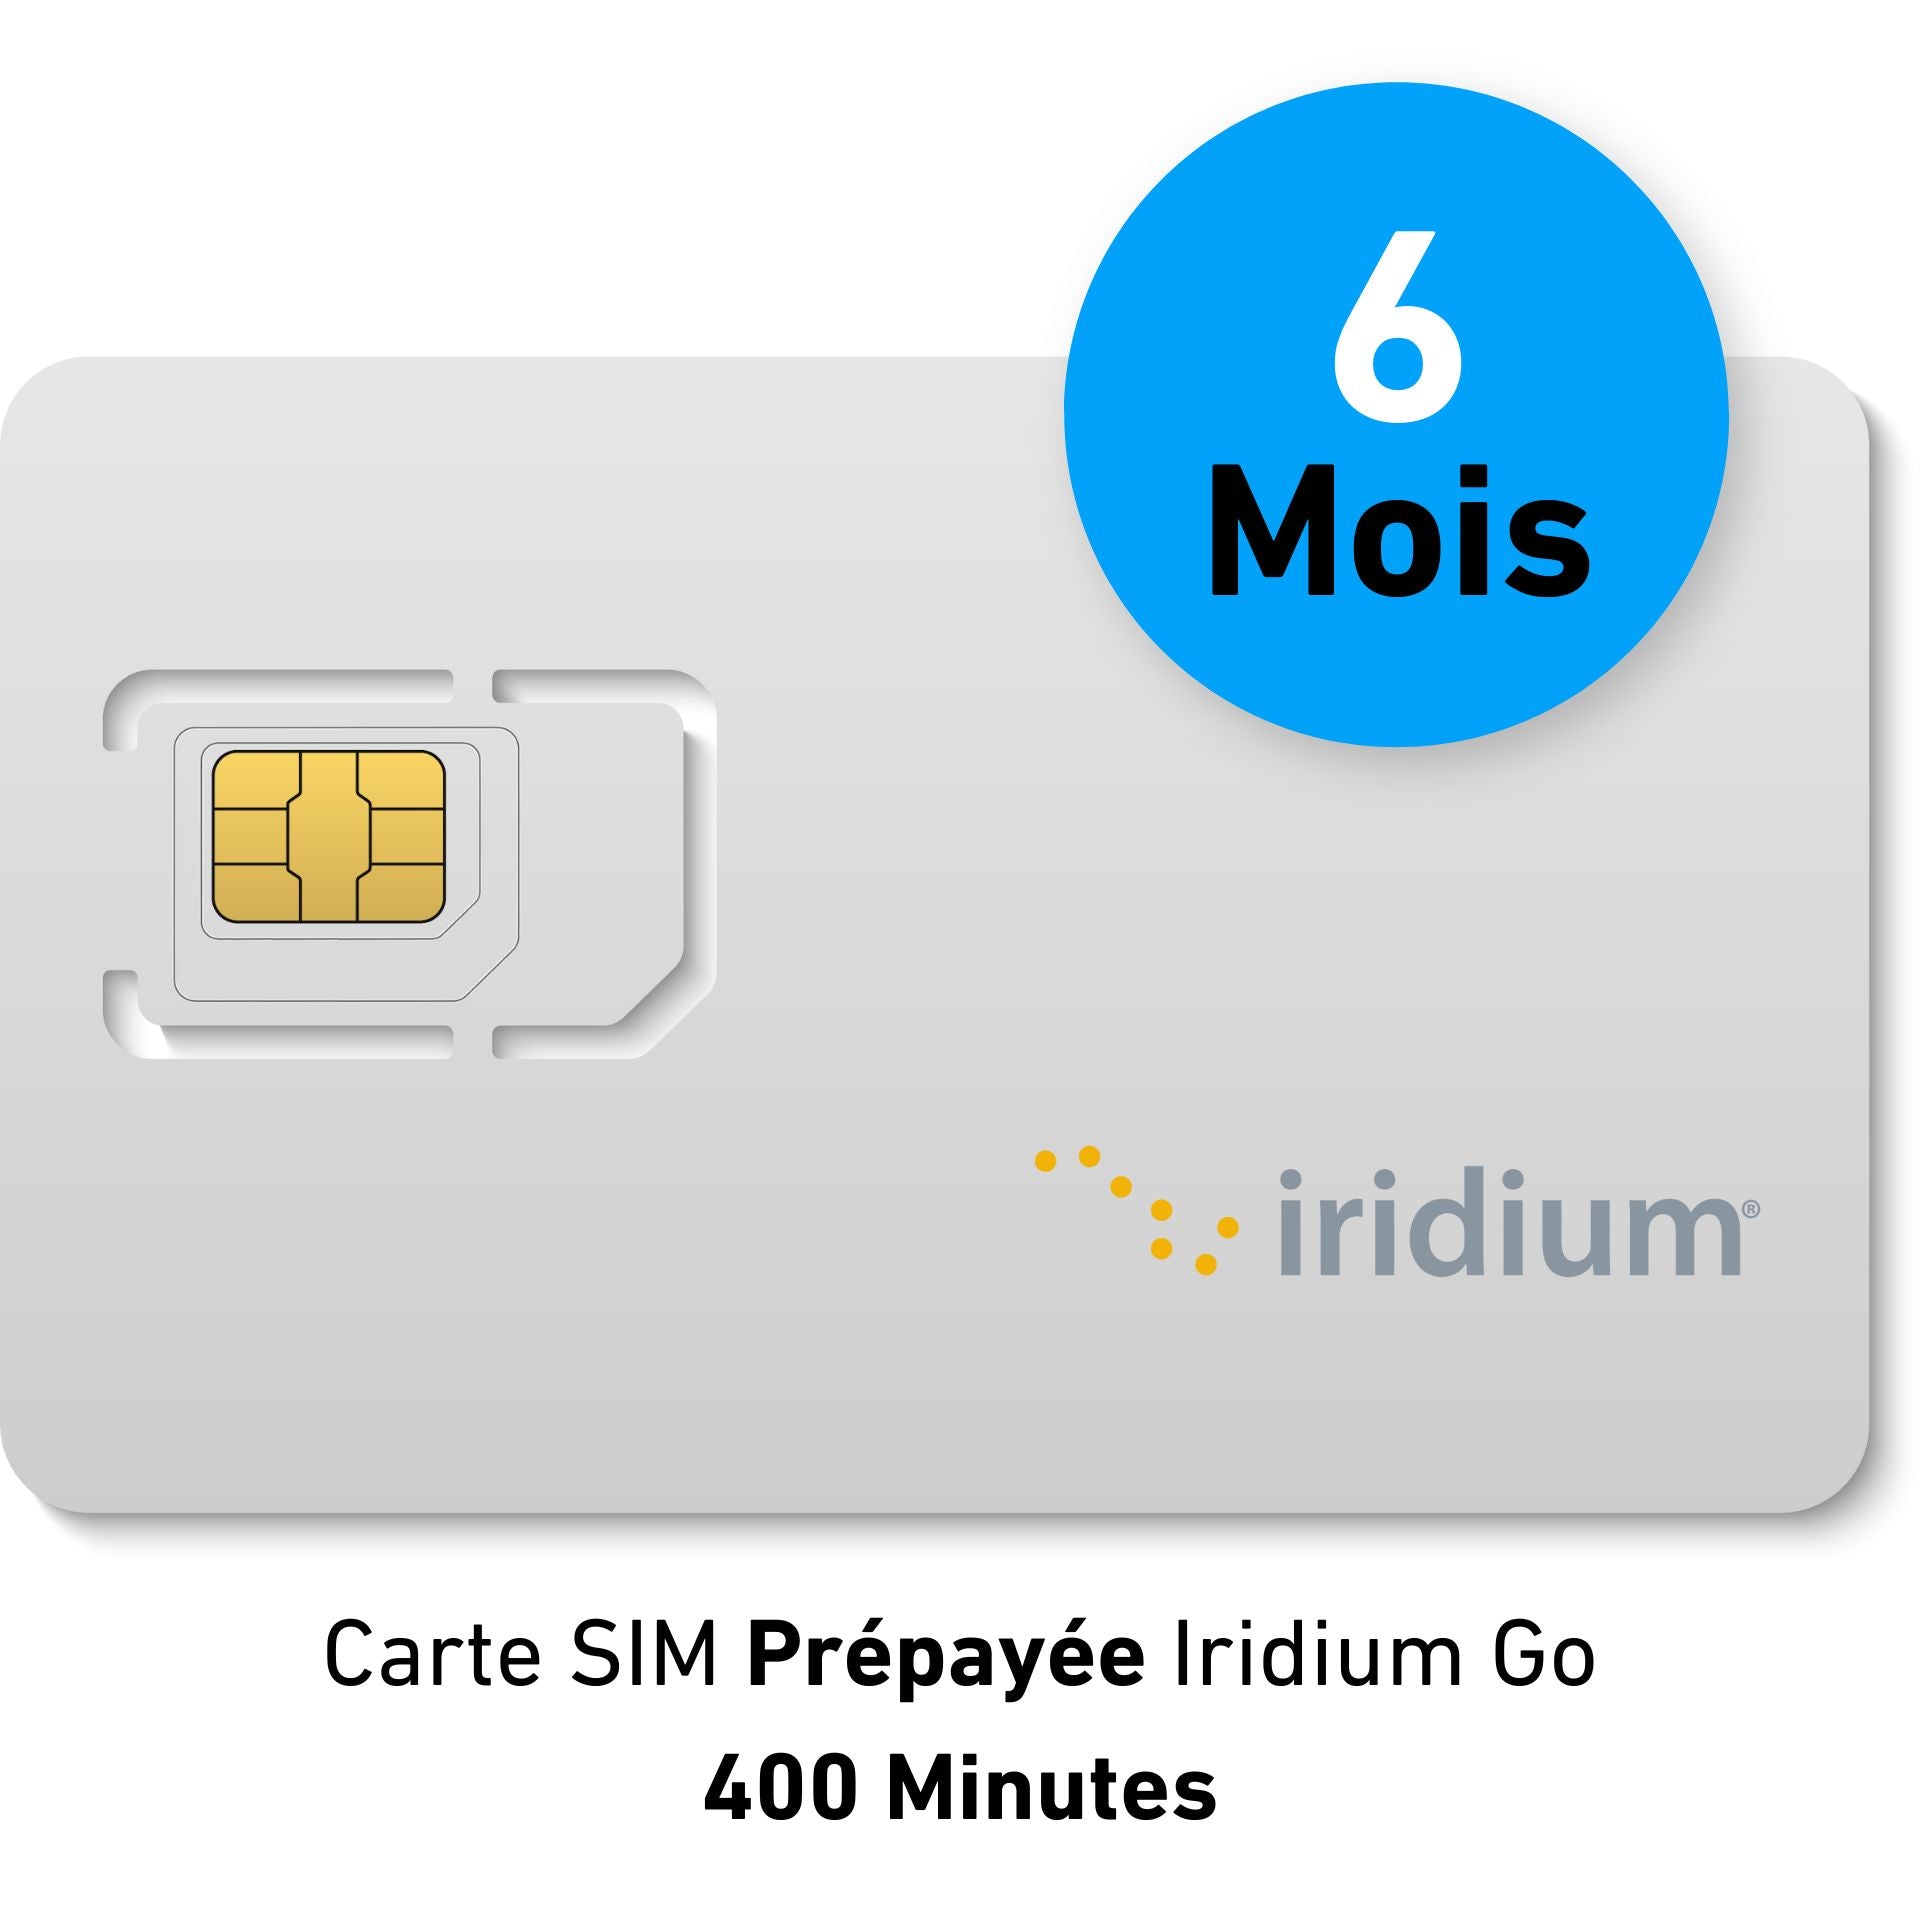 Carte SIM IRIDIUM GO Prépayée - 400 min DATA - 6 MOIS